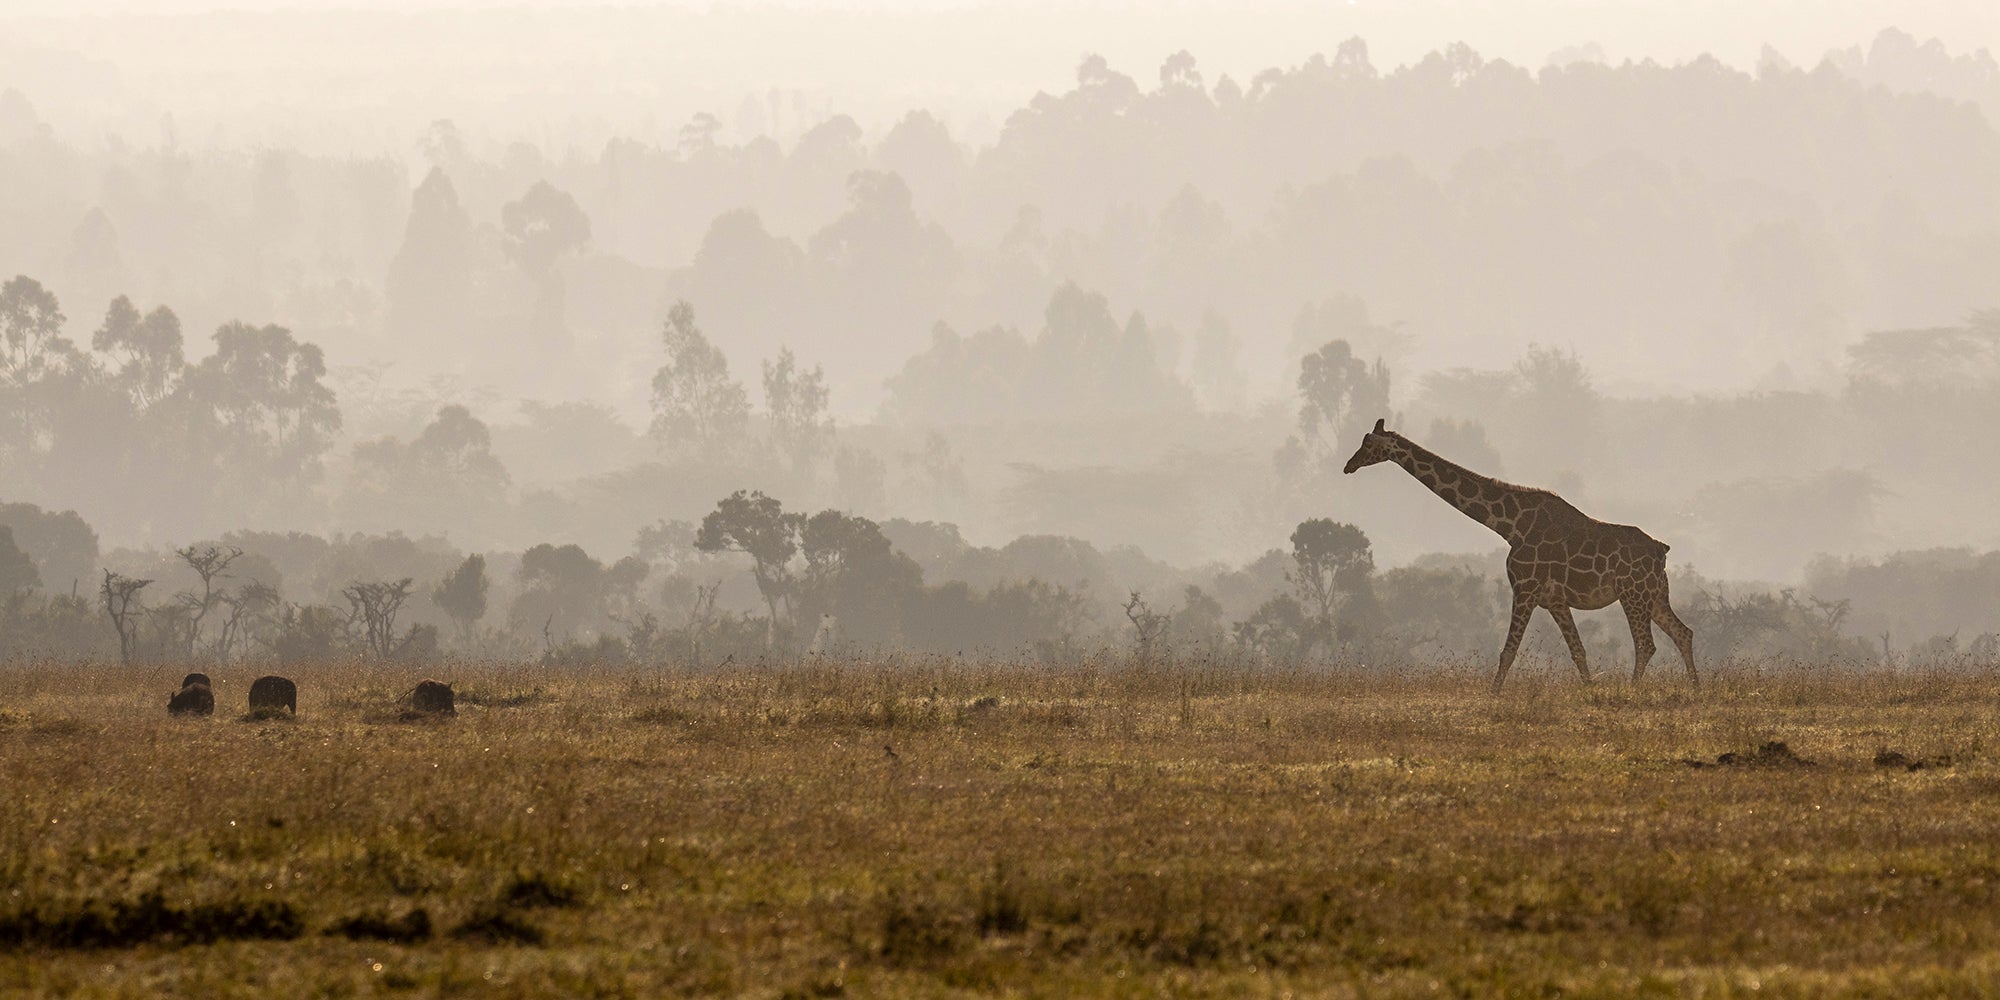 A Lonesome Giraffe walking in the Mist - Kenya